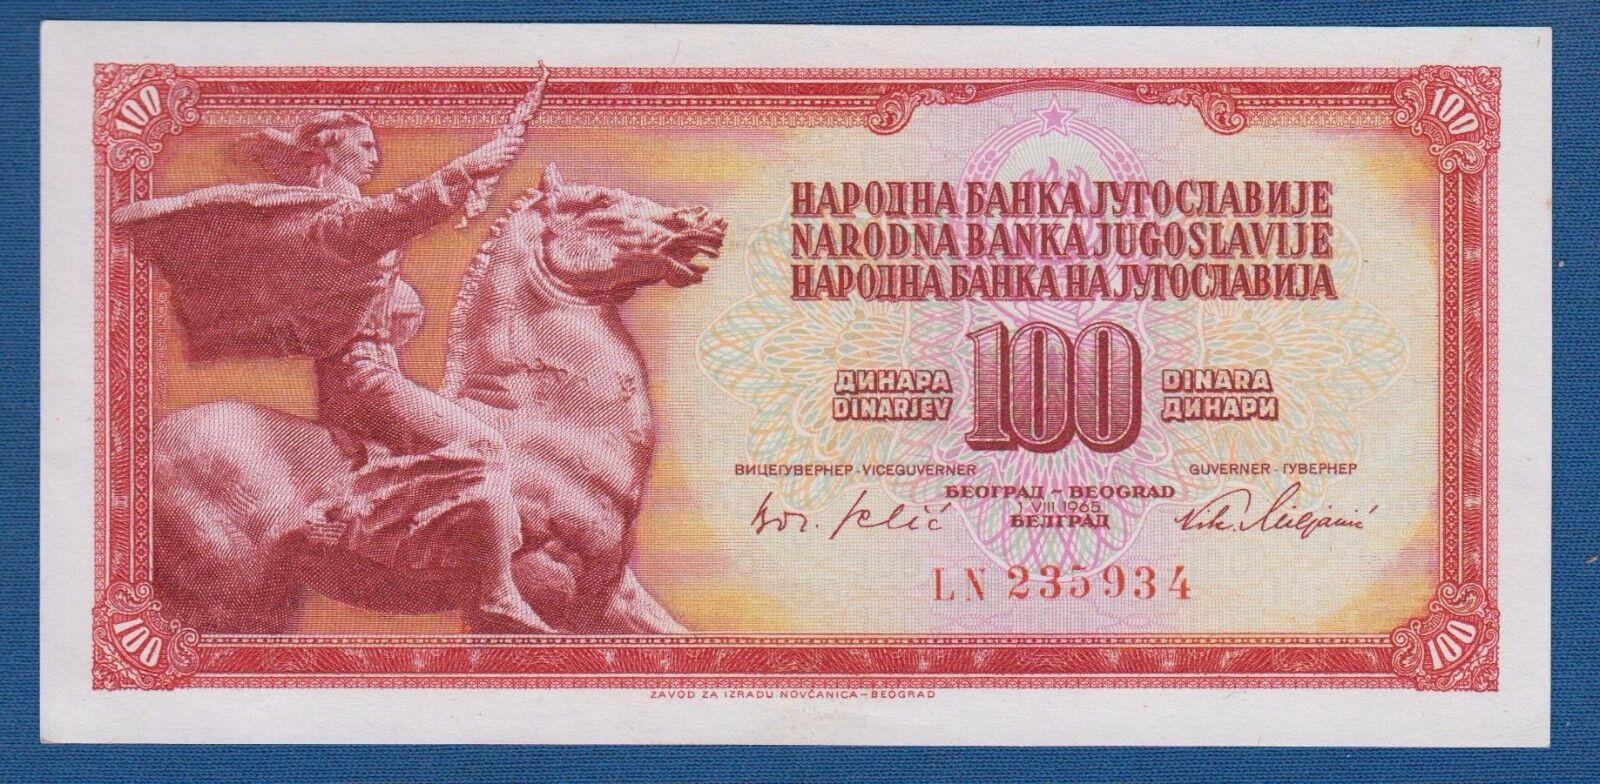 100 DINARA 1965 Baroque Style, Yugoslavia banknotes SFRJ, verra rarre banknotes